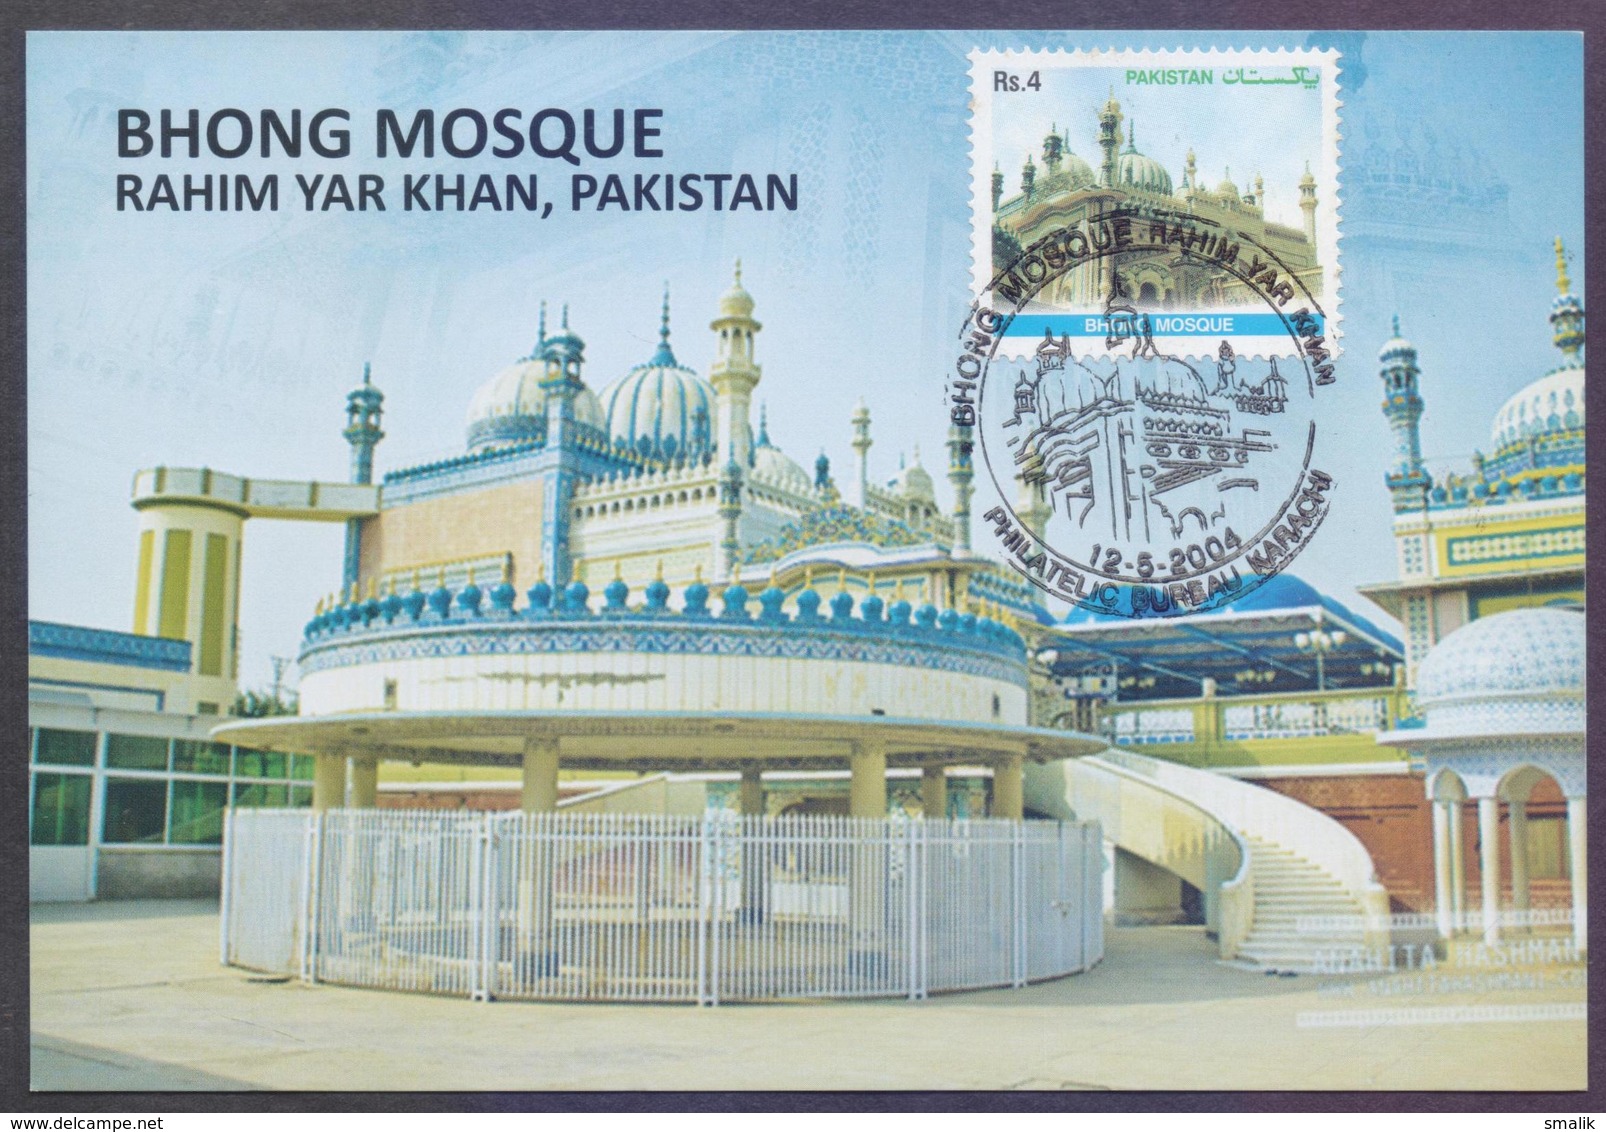 PAKISTAN 2004 - BHONG MOSQUE, Islam, MAXIMUM CARD - Pakistan